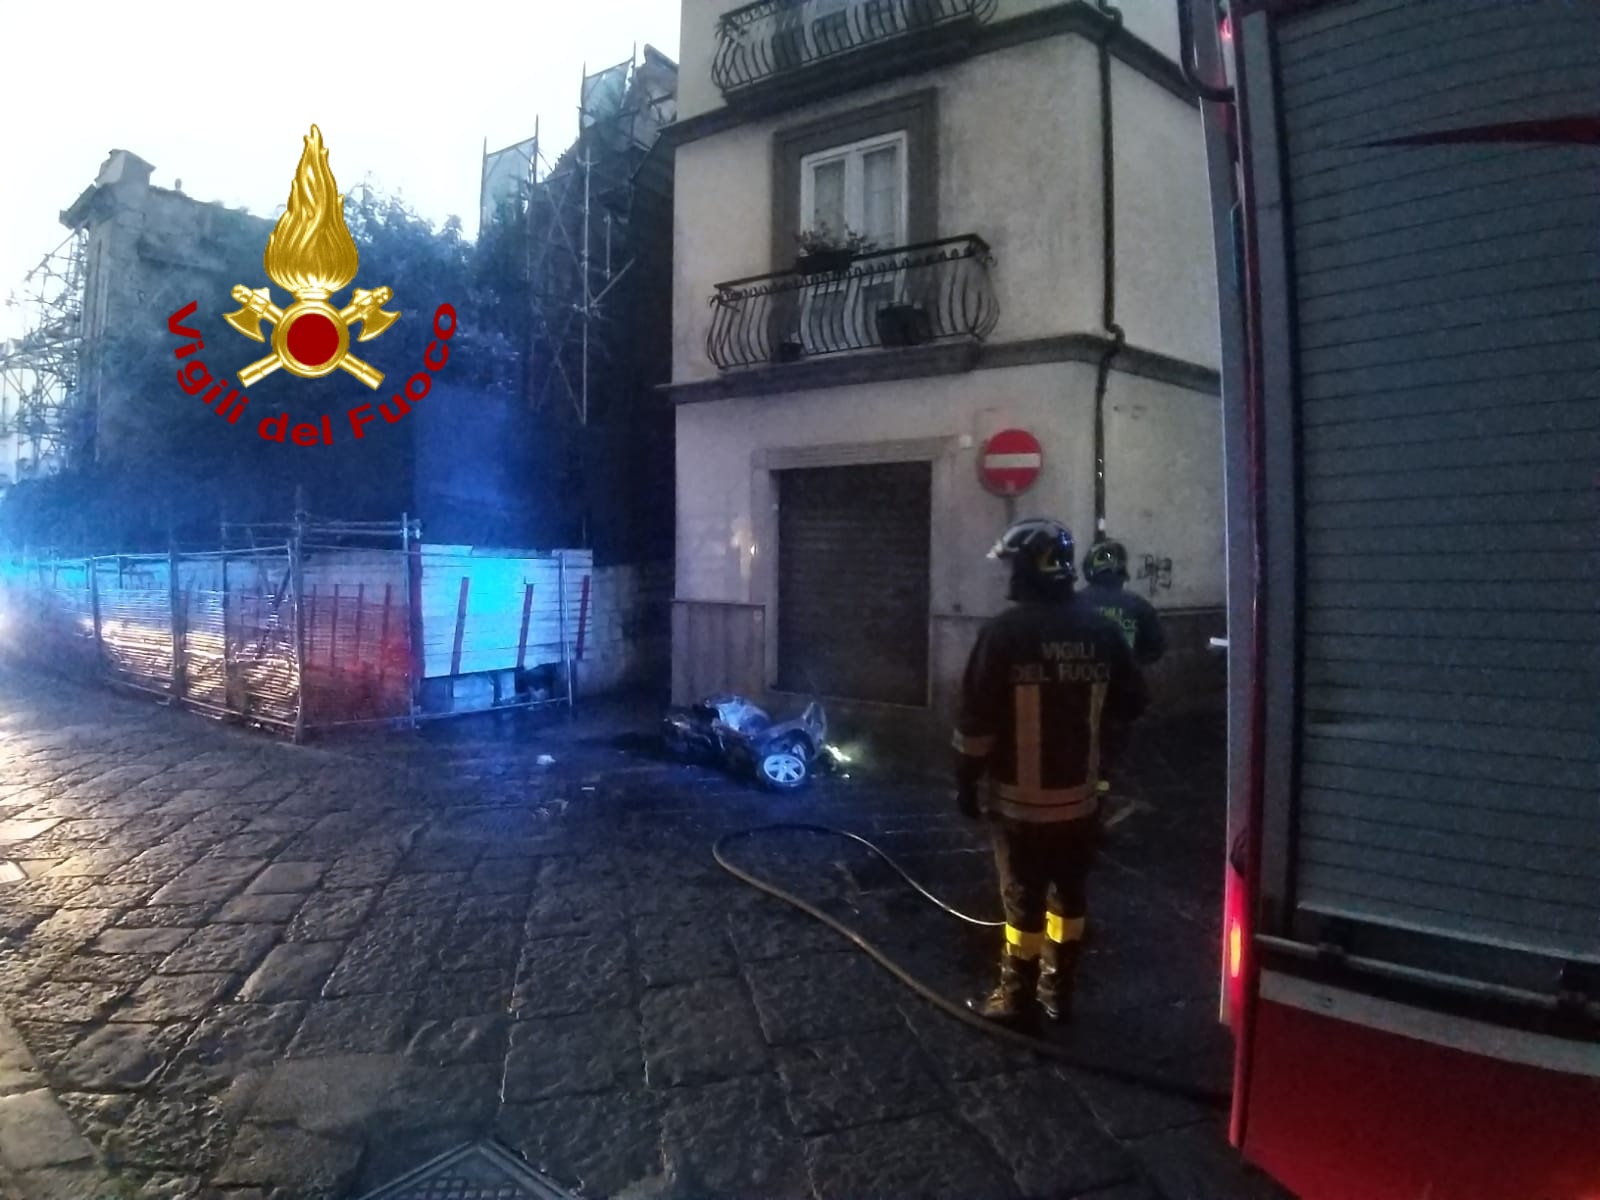 Scooter in fiamme in via Del Gaizo, intervengono i vigili del fuoco